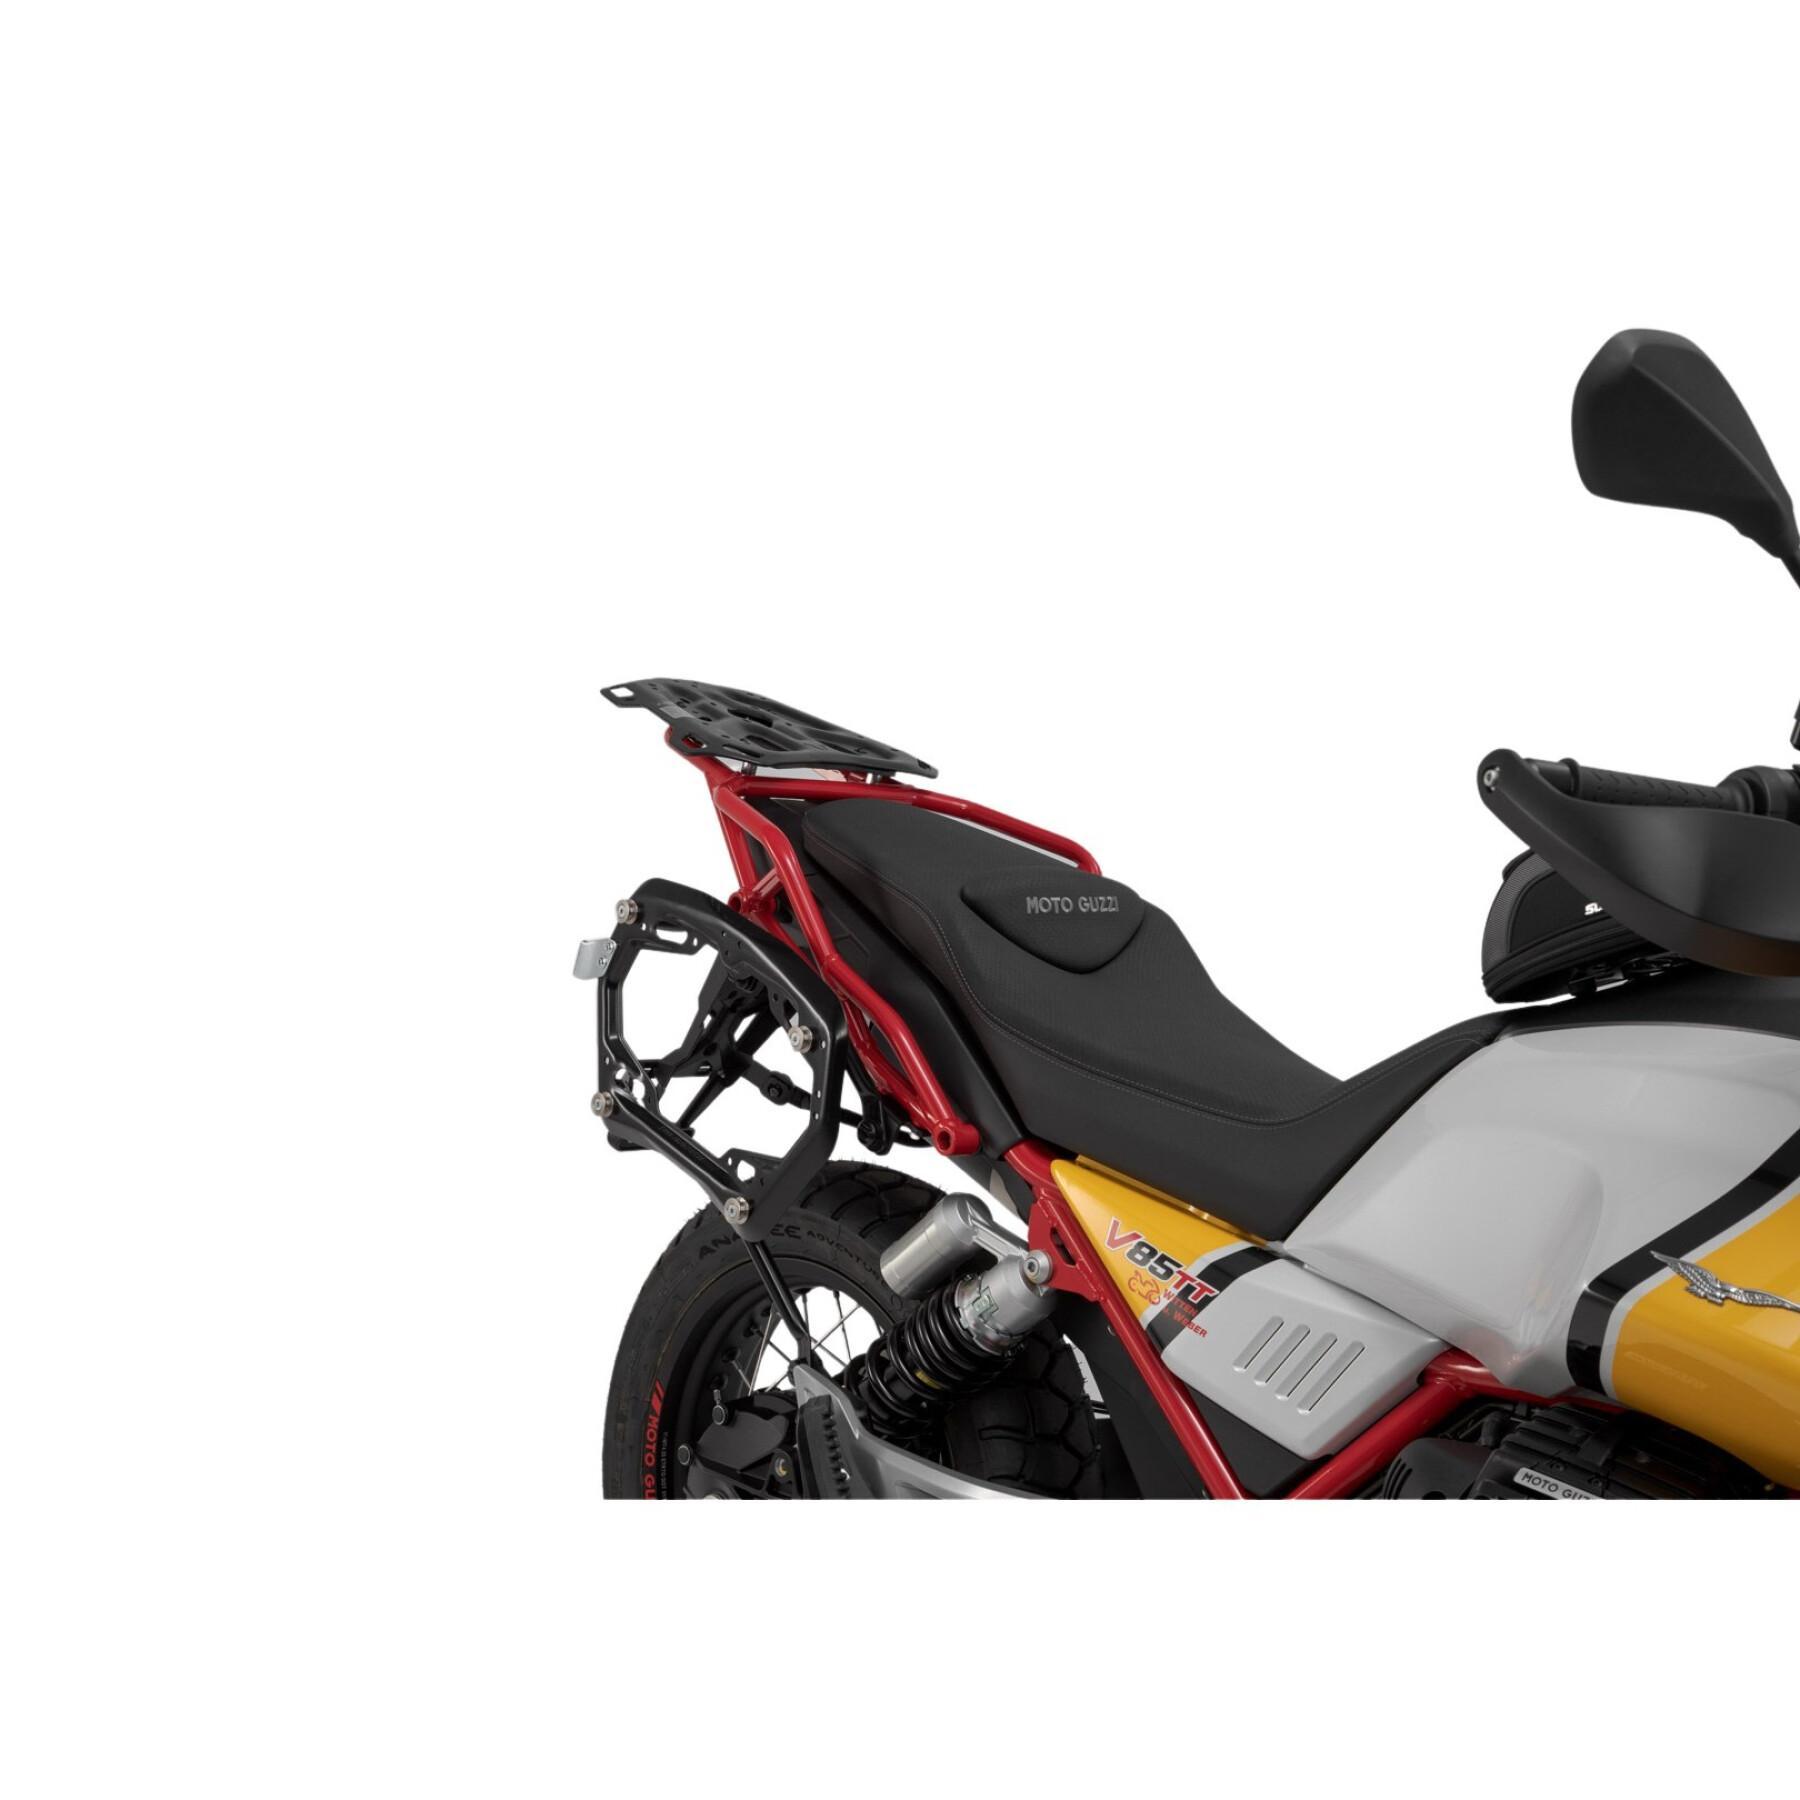 Sidostöd för motorcykel Sw-Motech Pro. Moto Guzzi V85 Tt (19-)